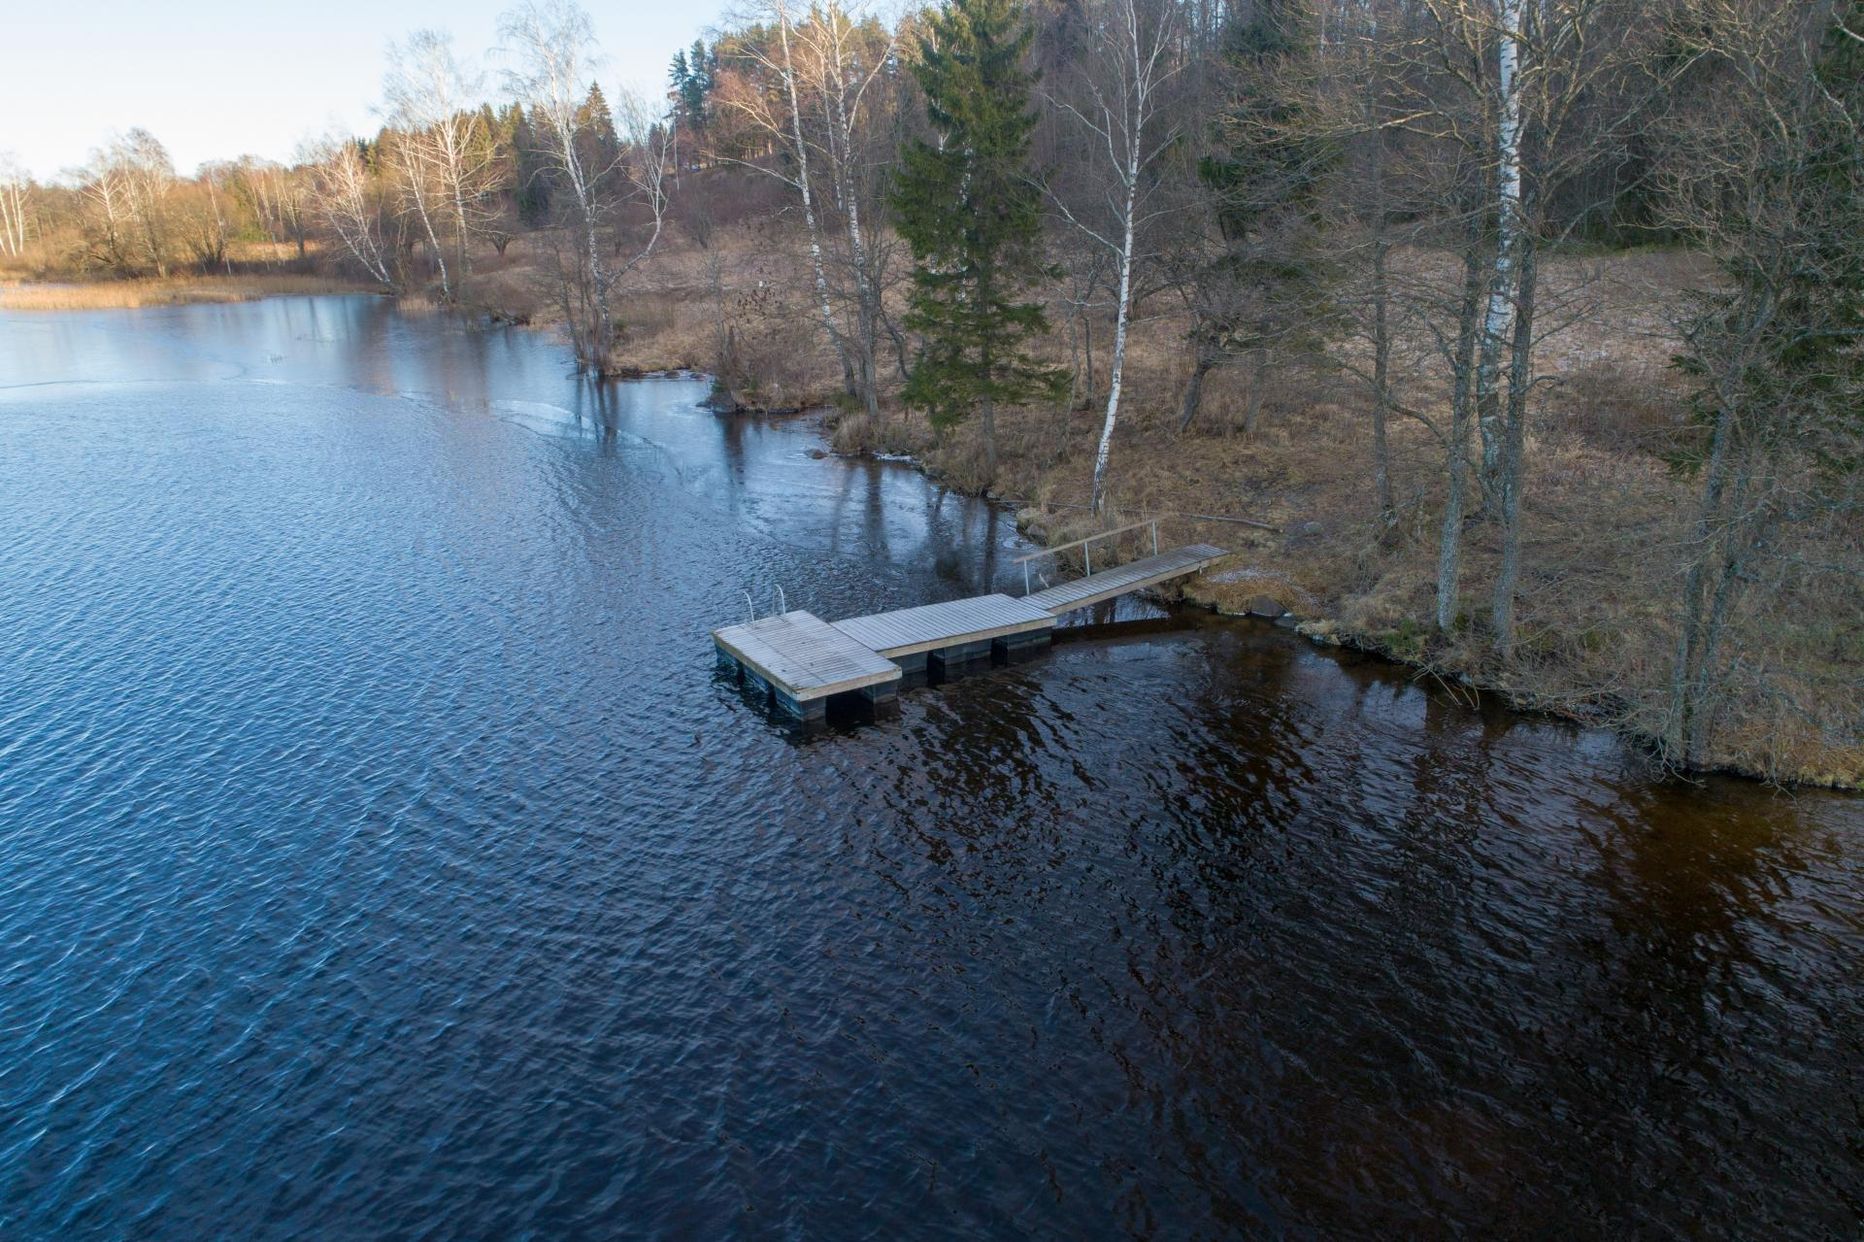 Pildil olevat vana paadisilda Viljandi järve Viiratsi-poolses otsas on kasutanud nii kalamehed kui puhkajad. See sild asendatakse hiljemalt 29. maiks uuega.